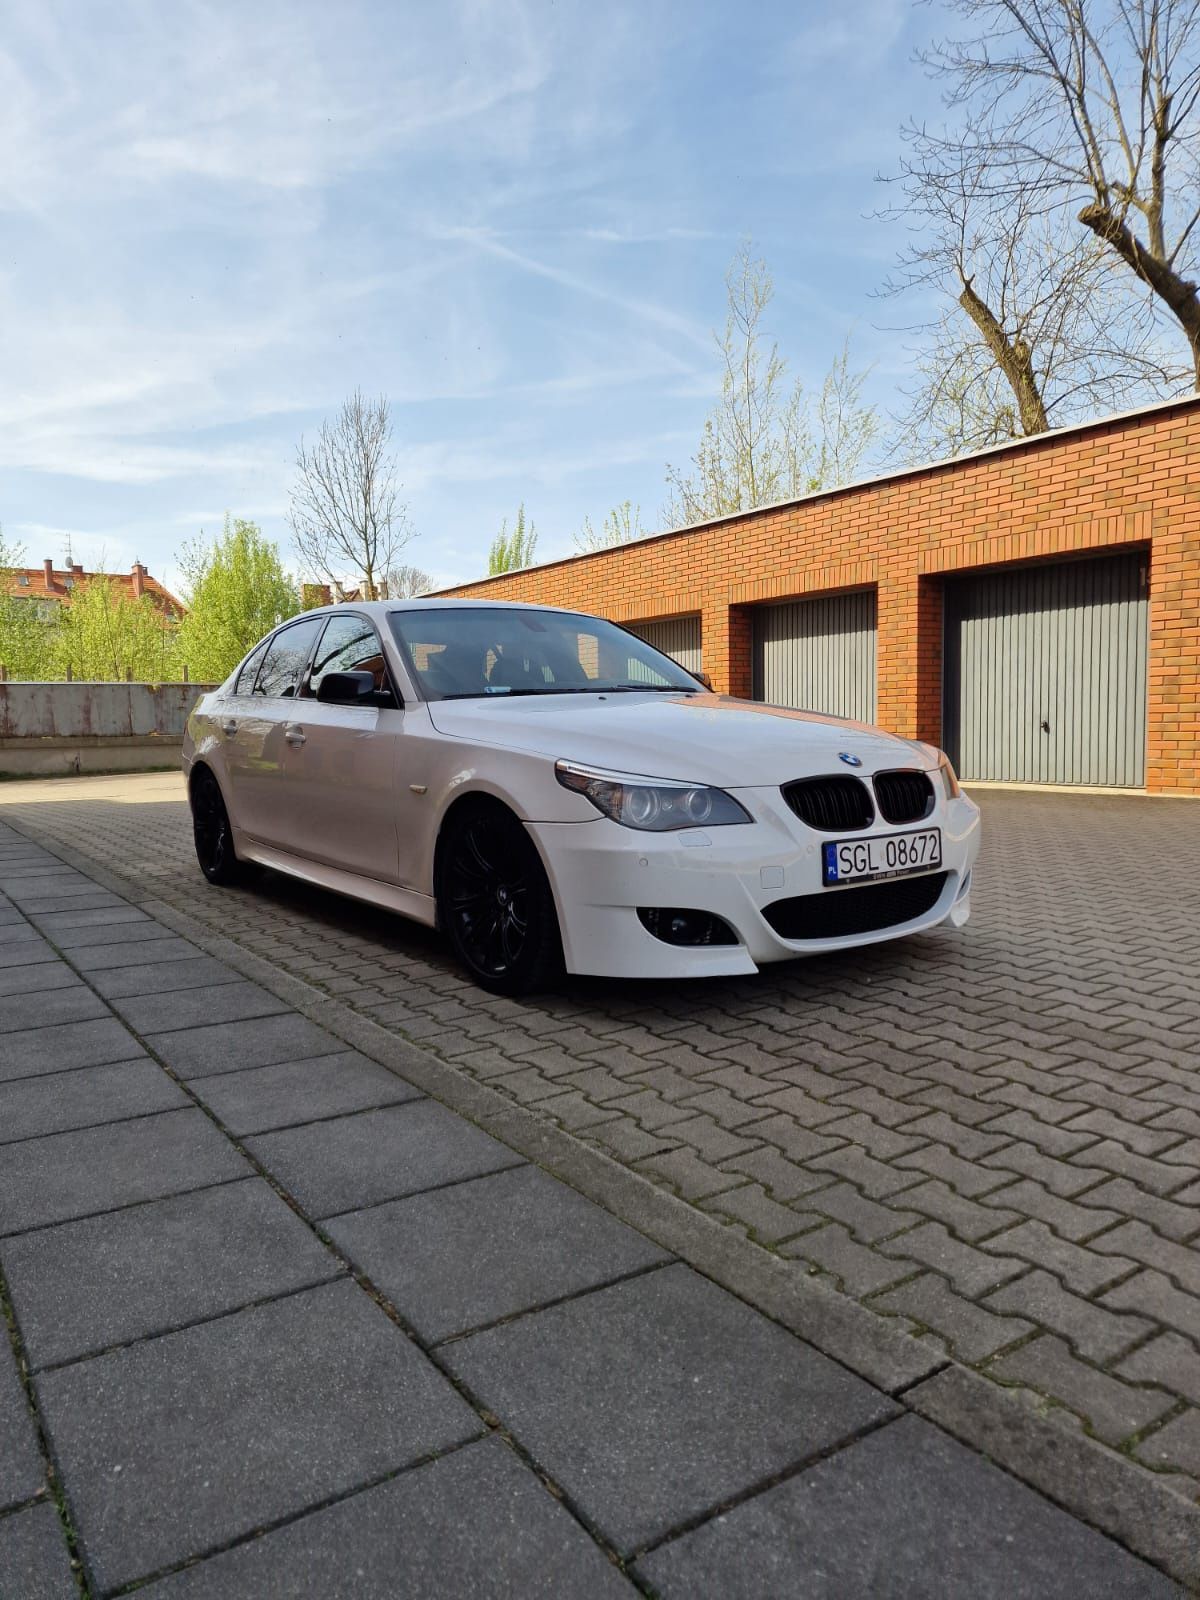 BMW E60 525d 530d 535d biały 6lat w jednych rękach